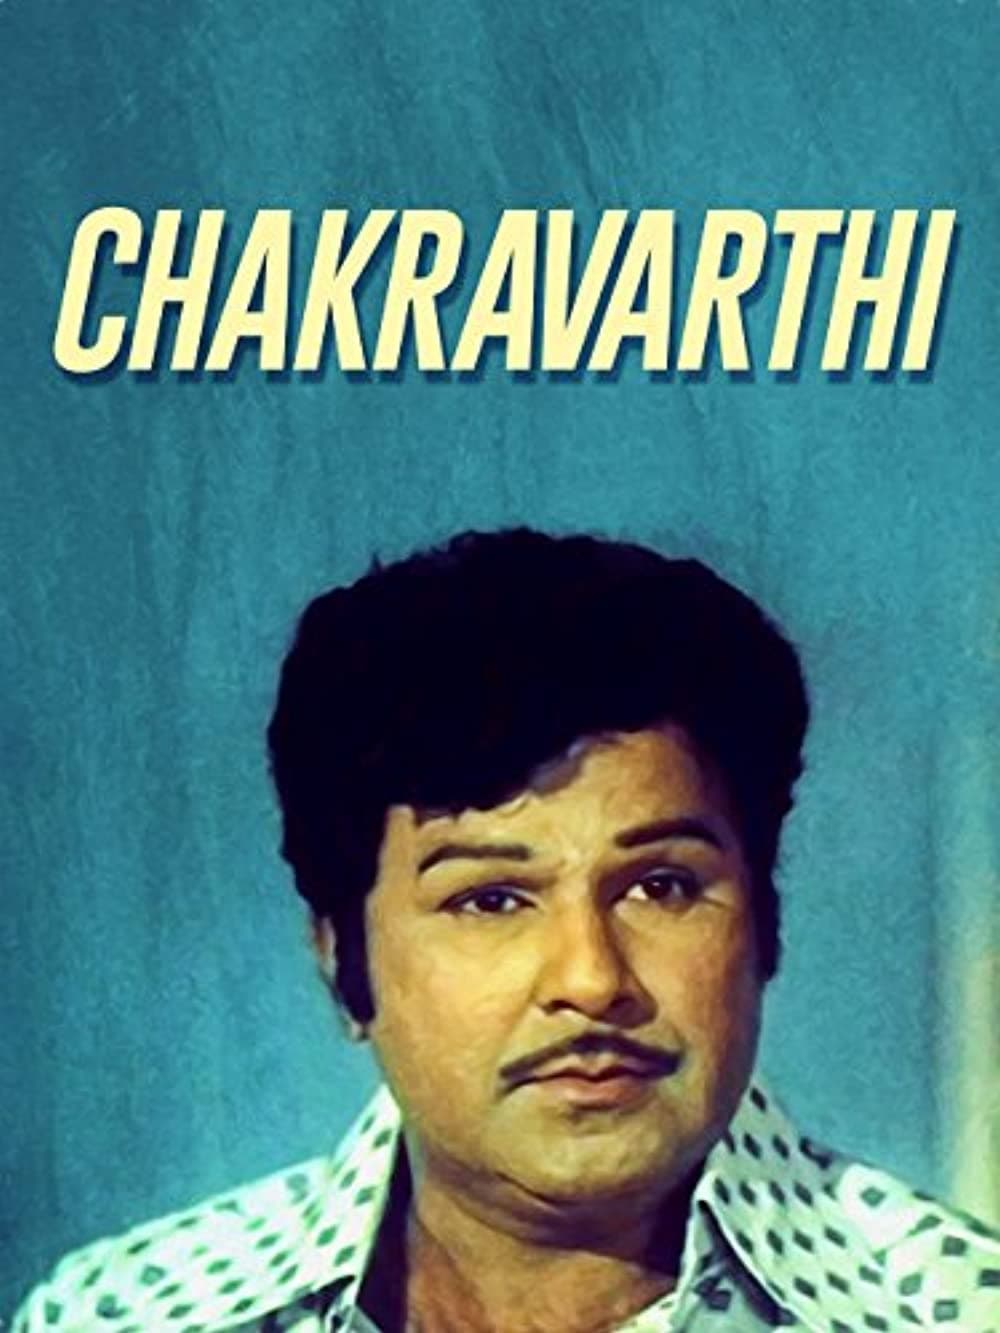 Chakravathi